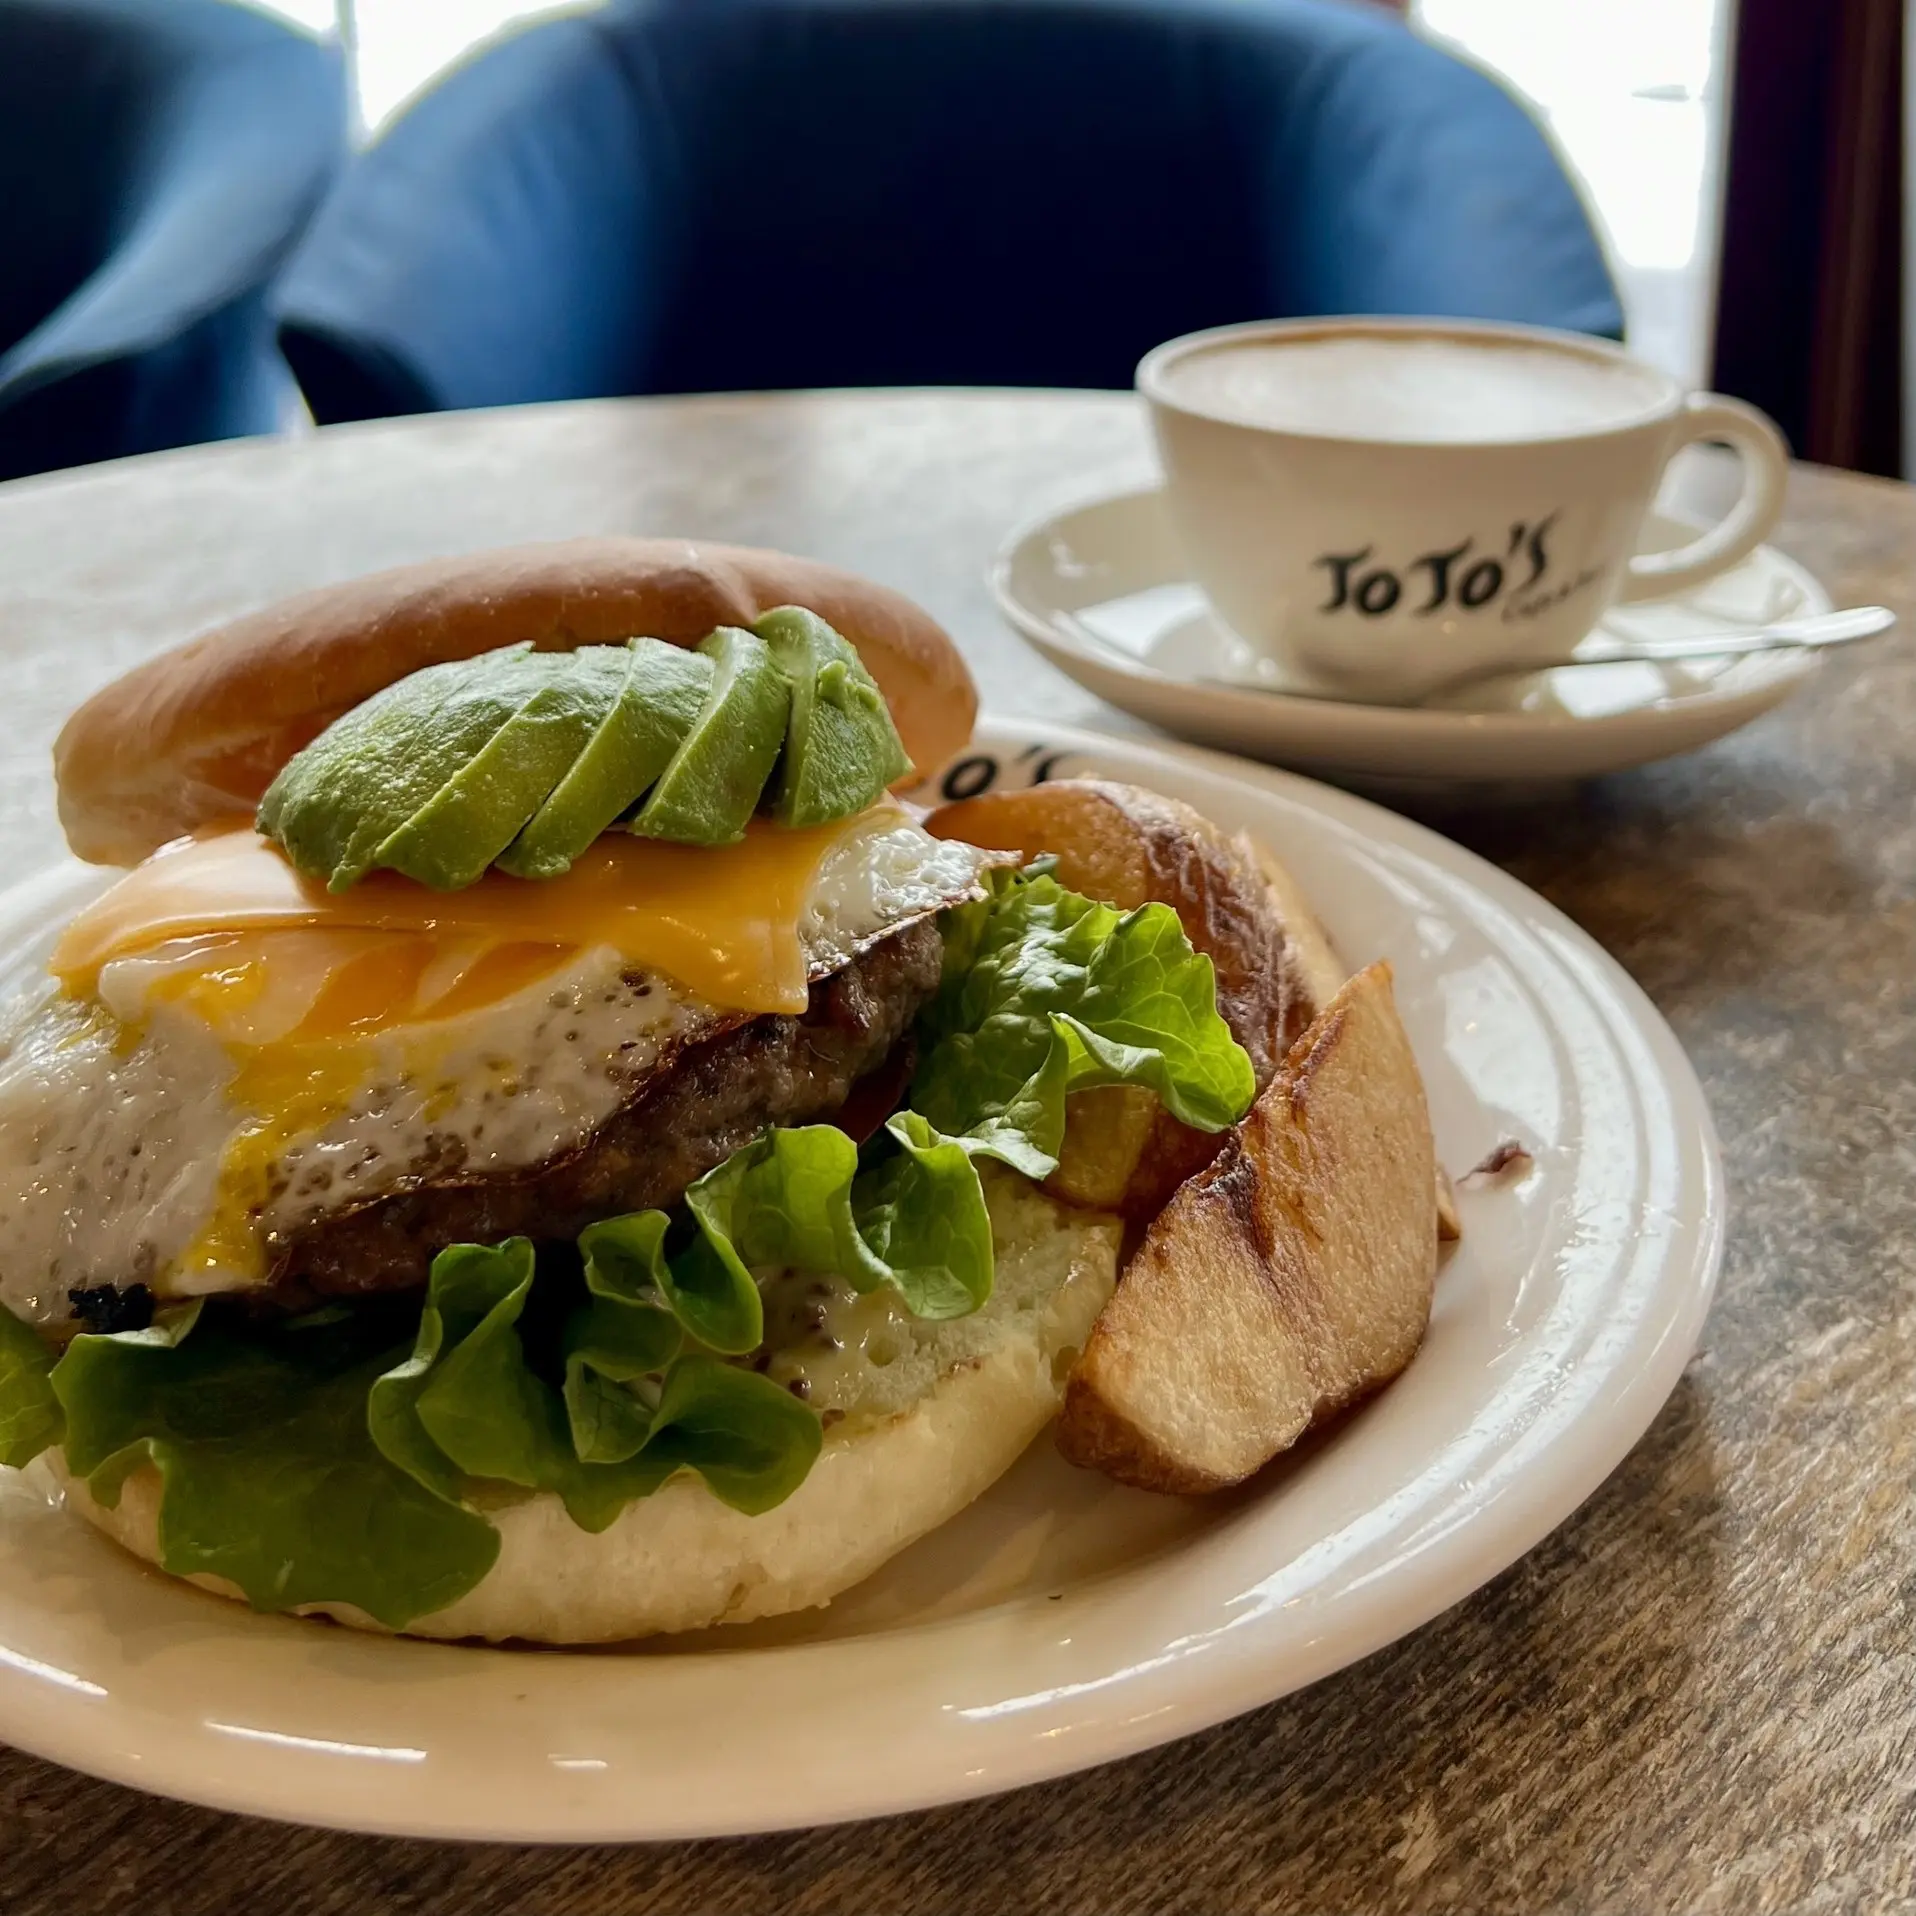 ニセコのカフェ「JoJo&#039;s Cafe＆Bar」のハンバーガーとカフェラテ